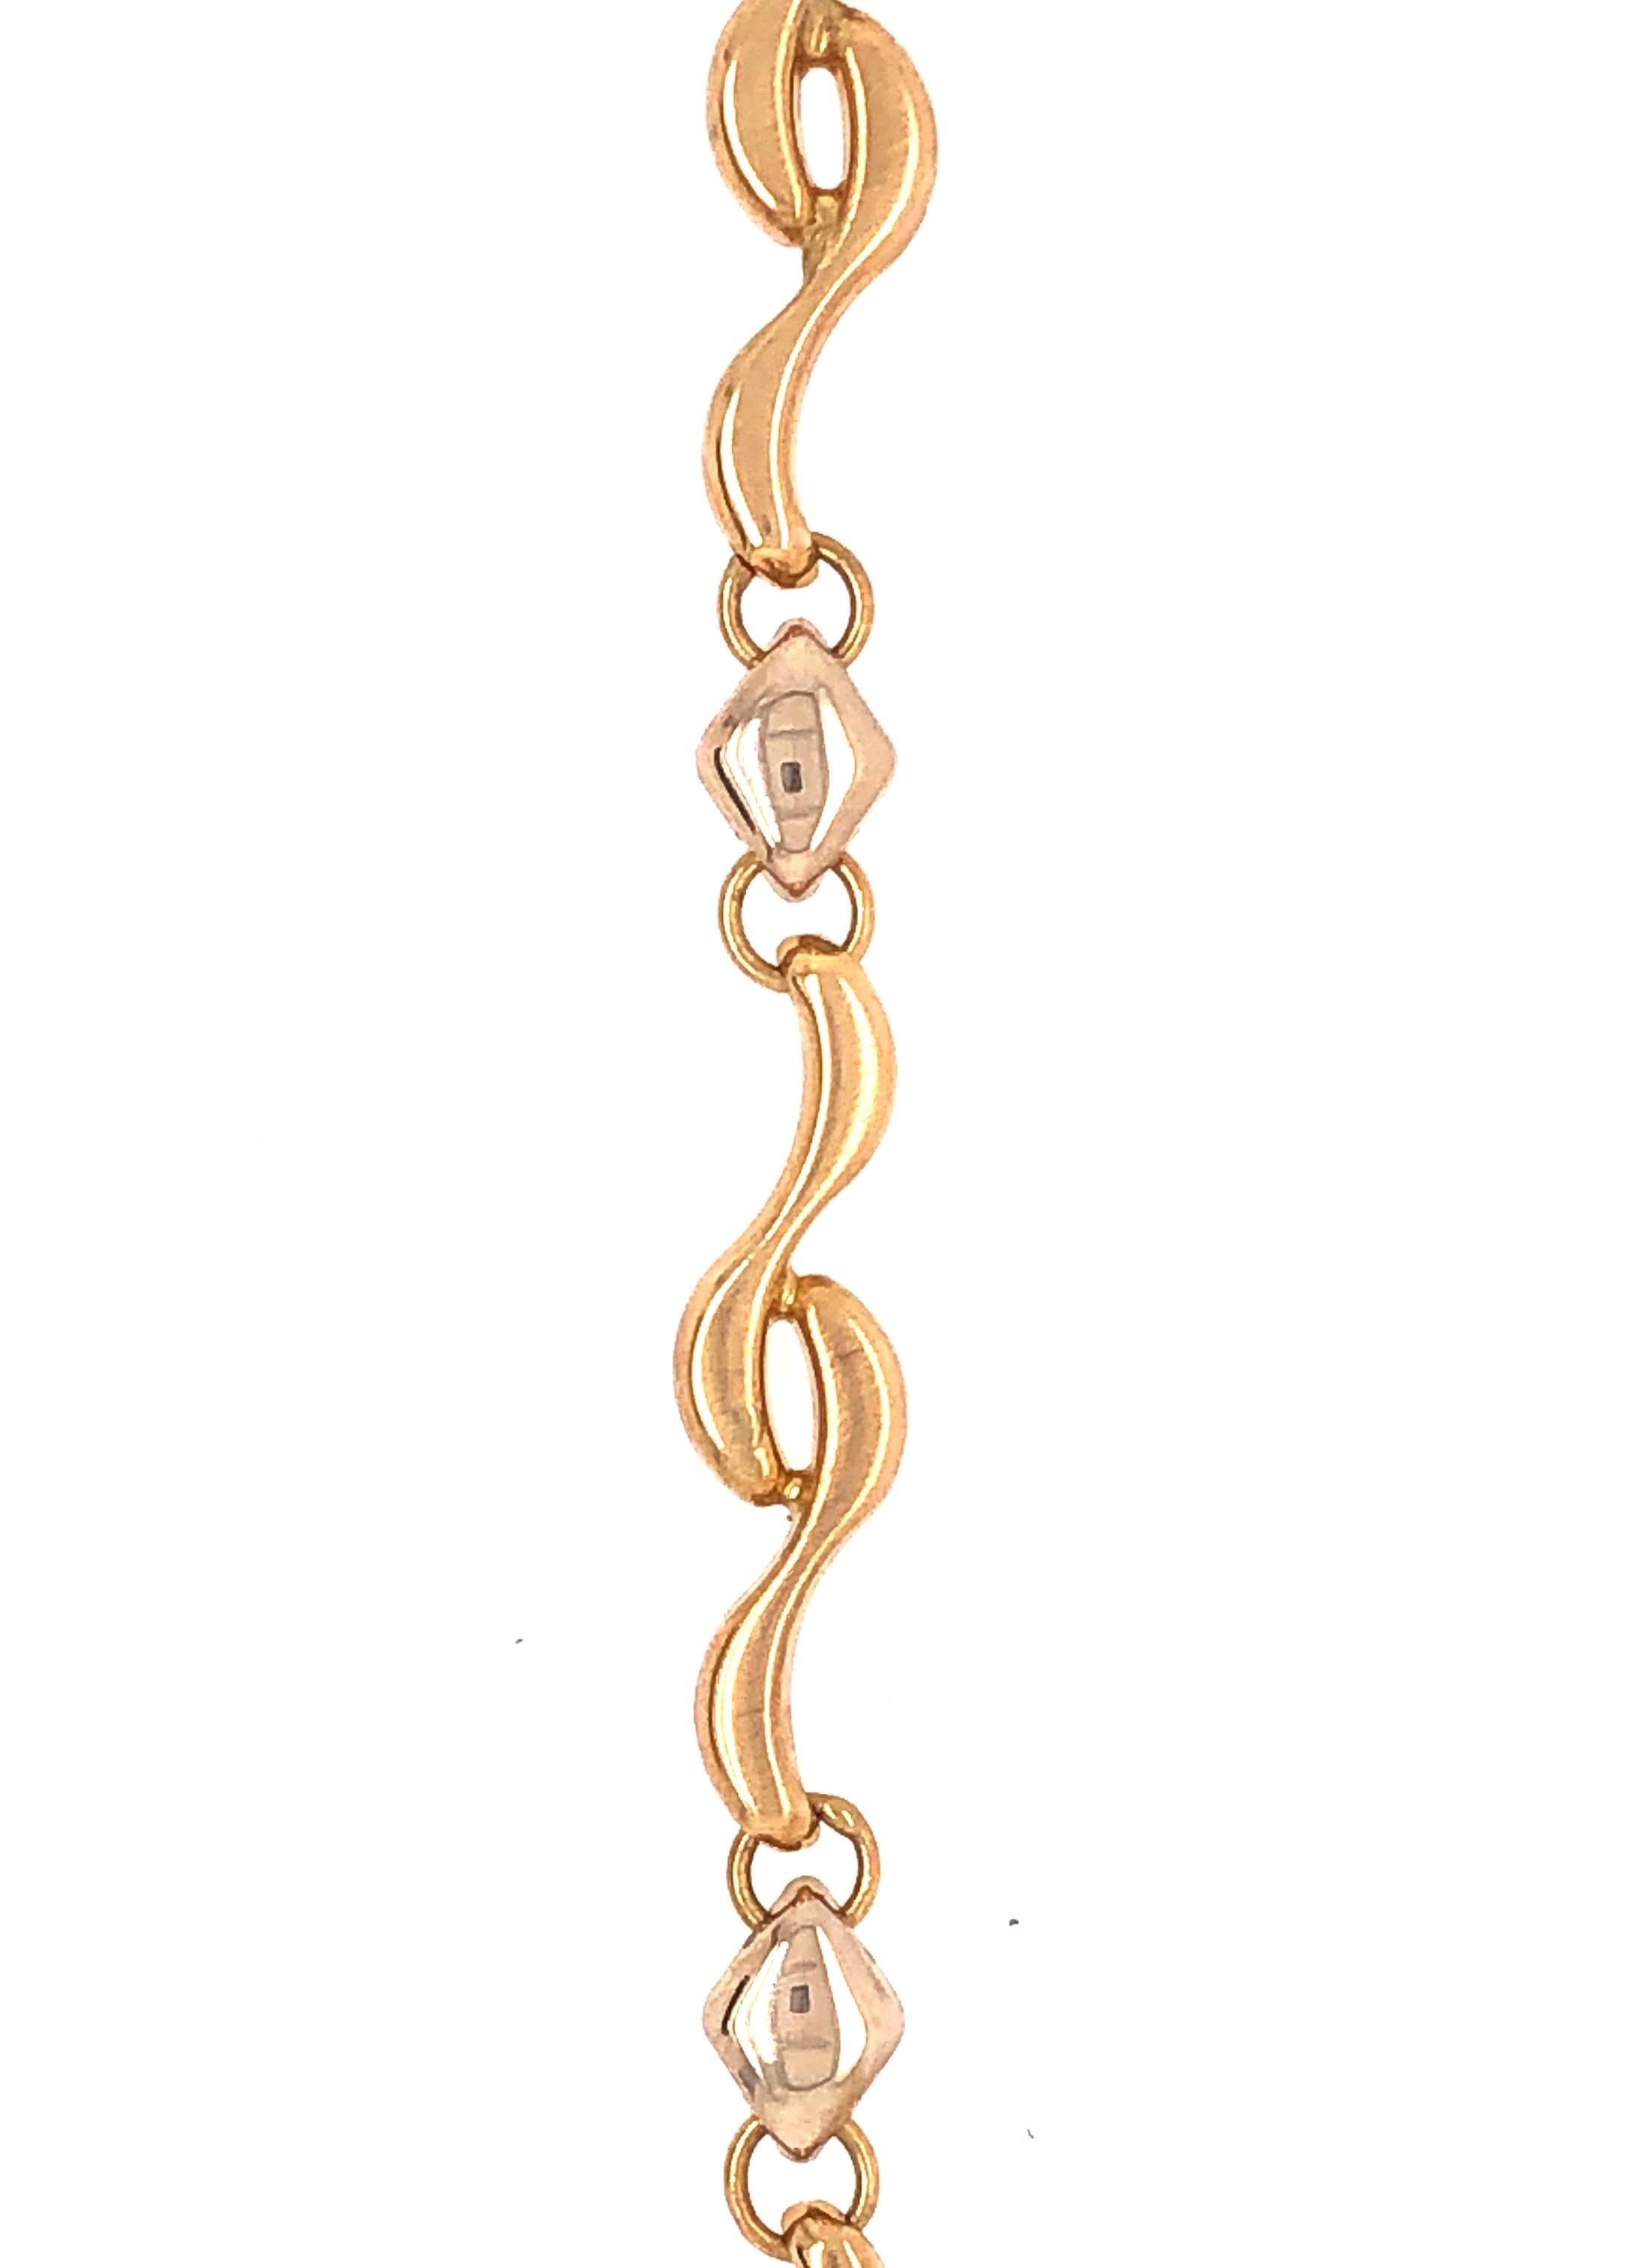 gold bracelet designs for ladies in sri lanka